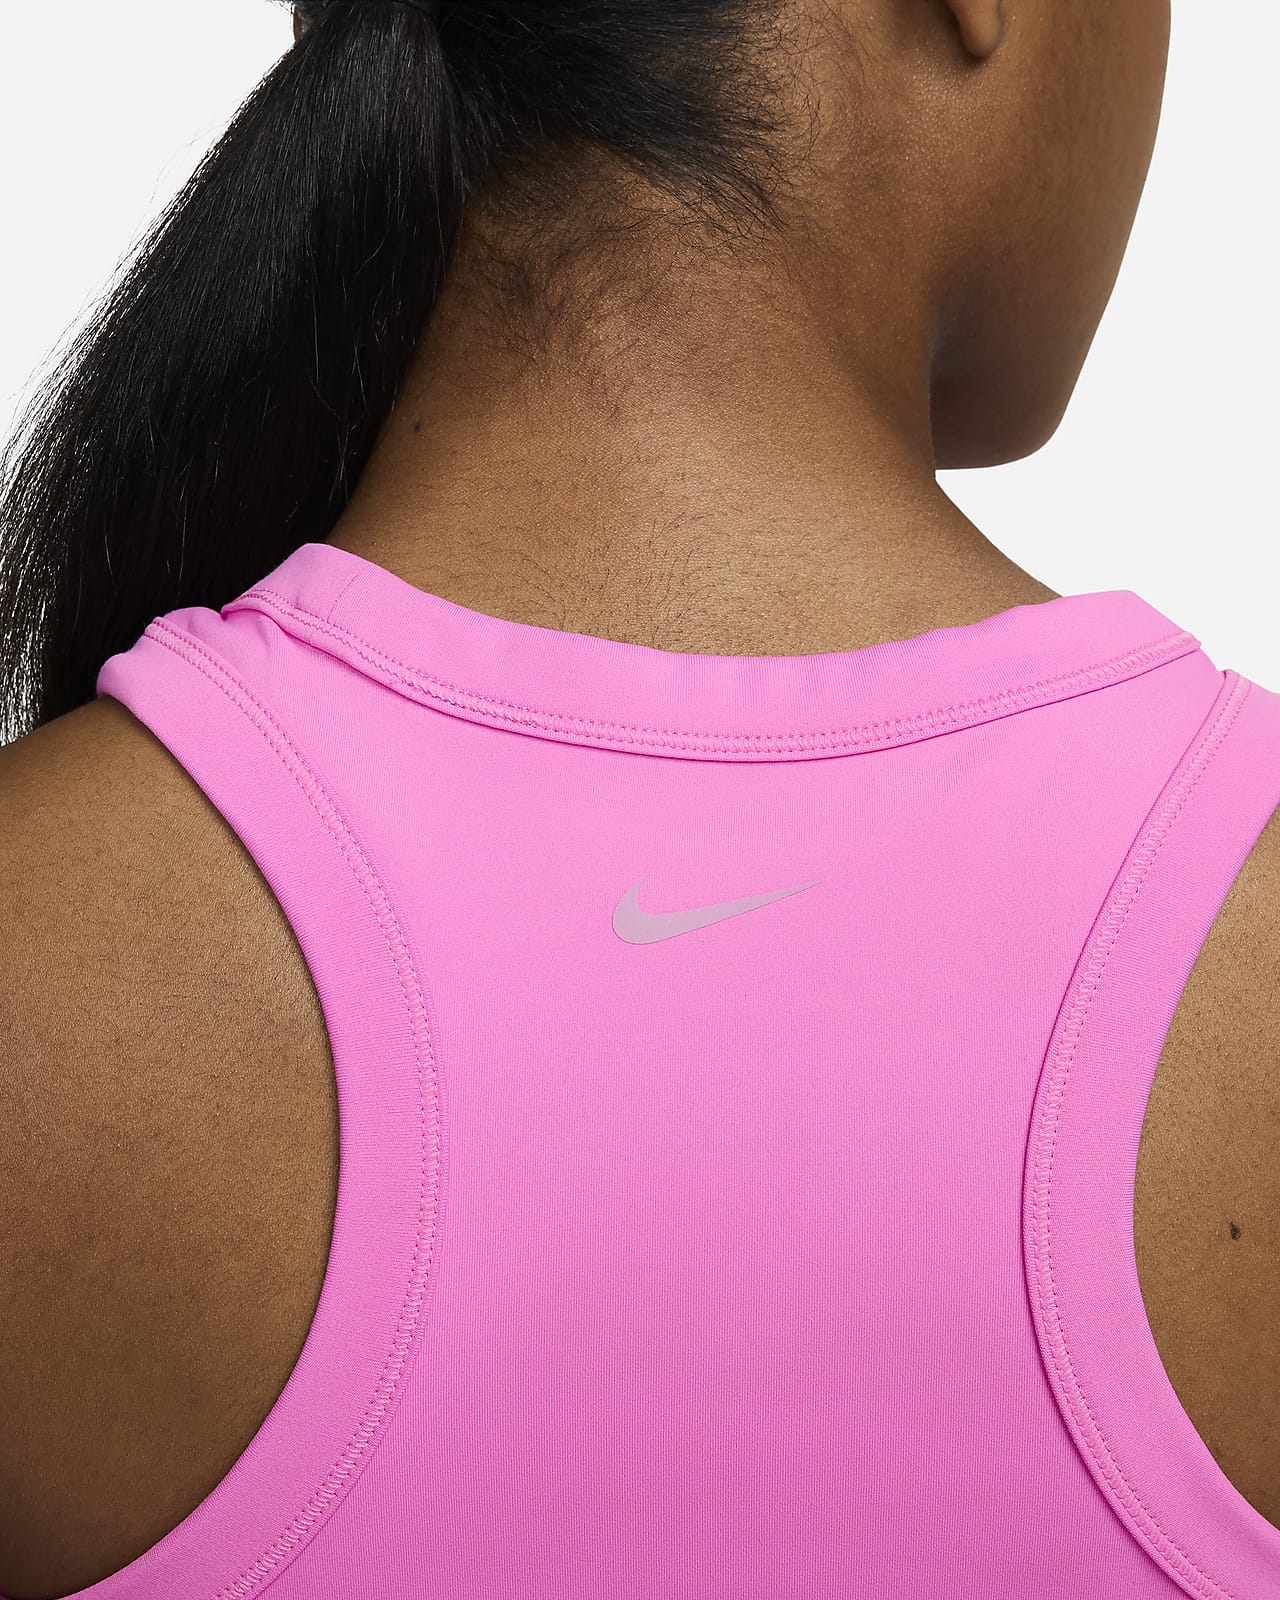 Nike Womens Dri-Fit Pink Racerback Built in Sports Bra Tank Top